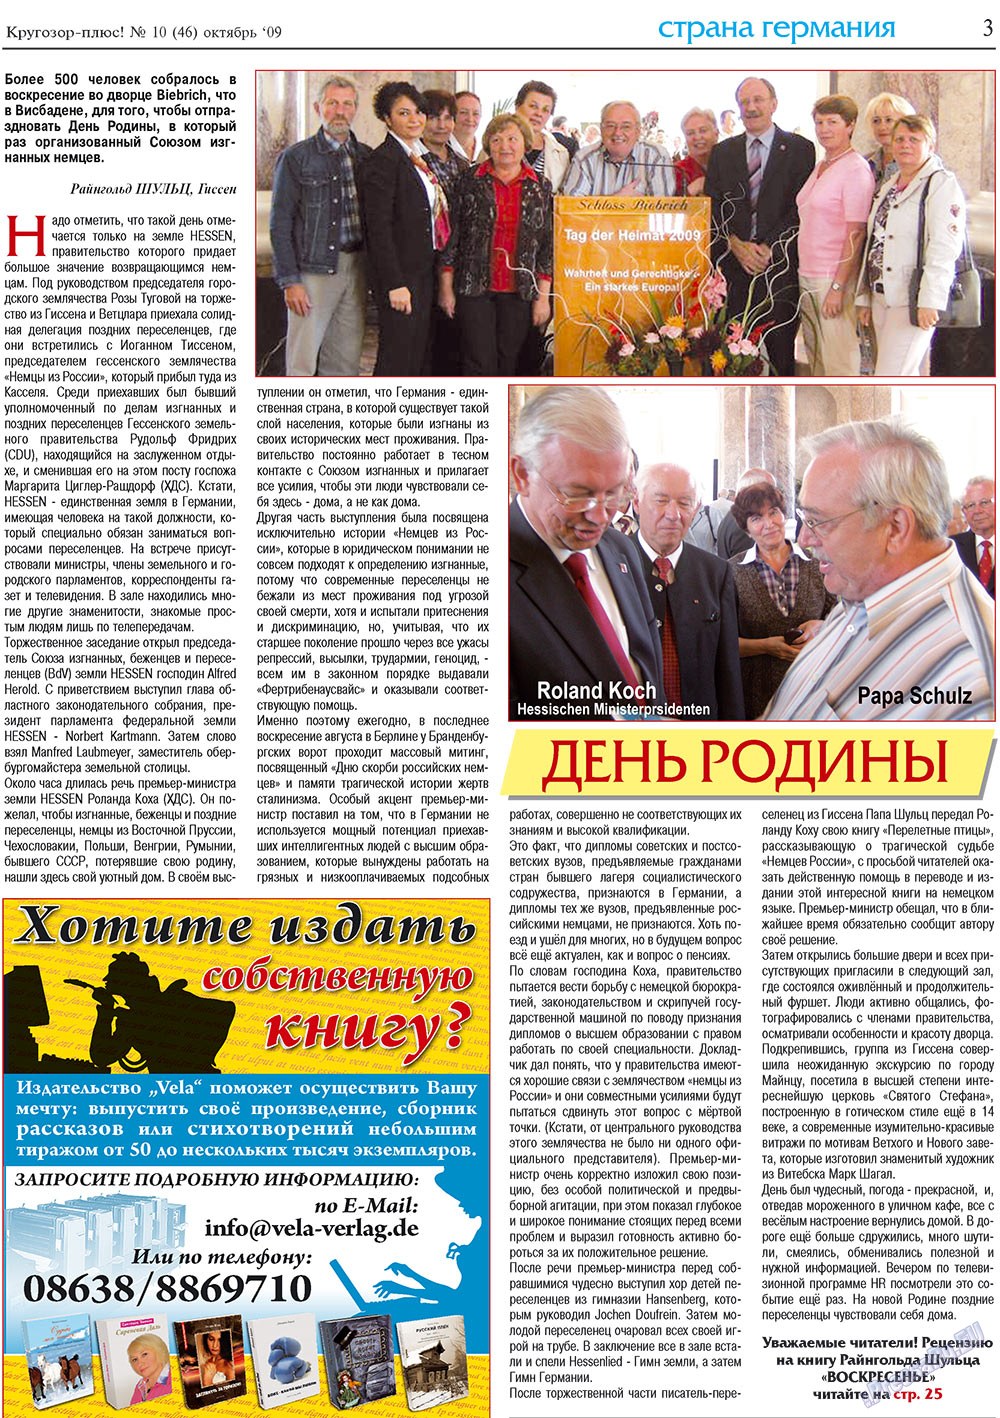 Кругозор плюс!, газета. 2009 №10 стр.3